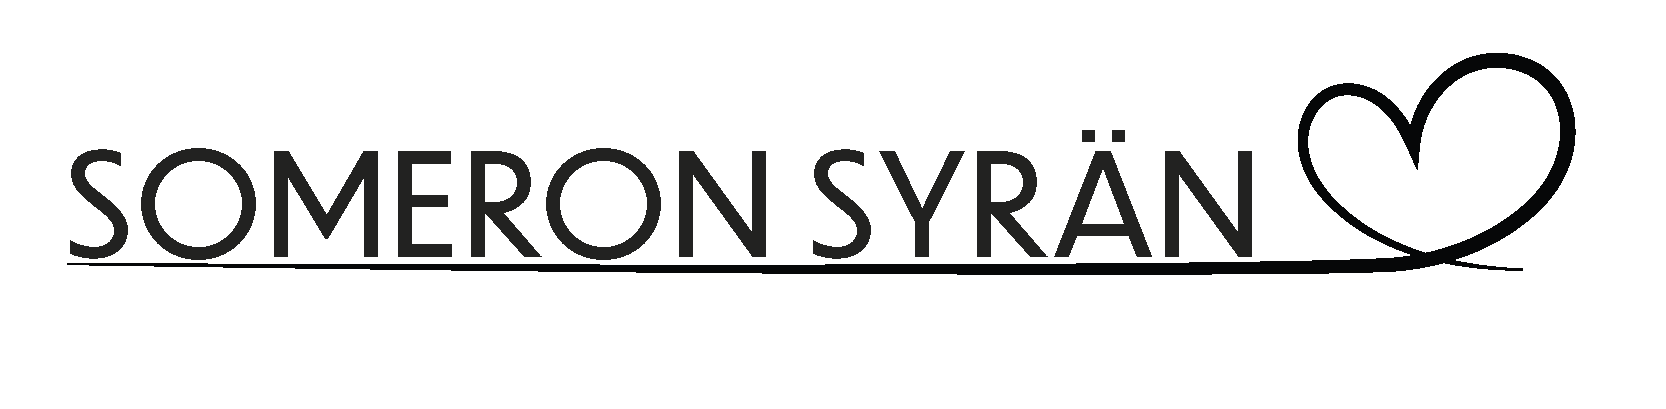 Someron syrän -hankkeen suunnitelmien esittely keskiviikkona 29.9. klo 18